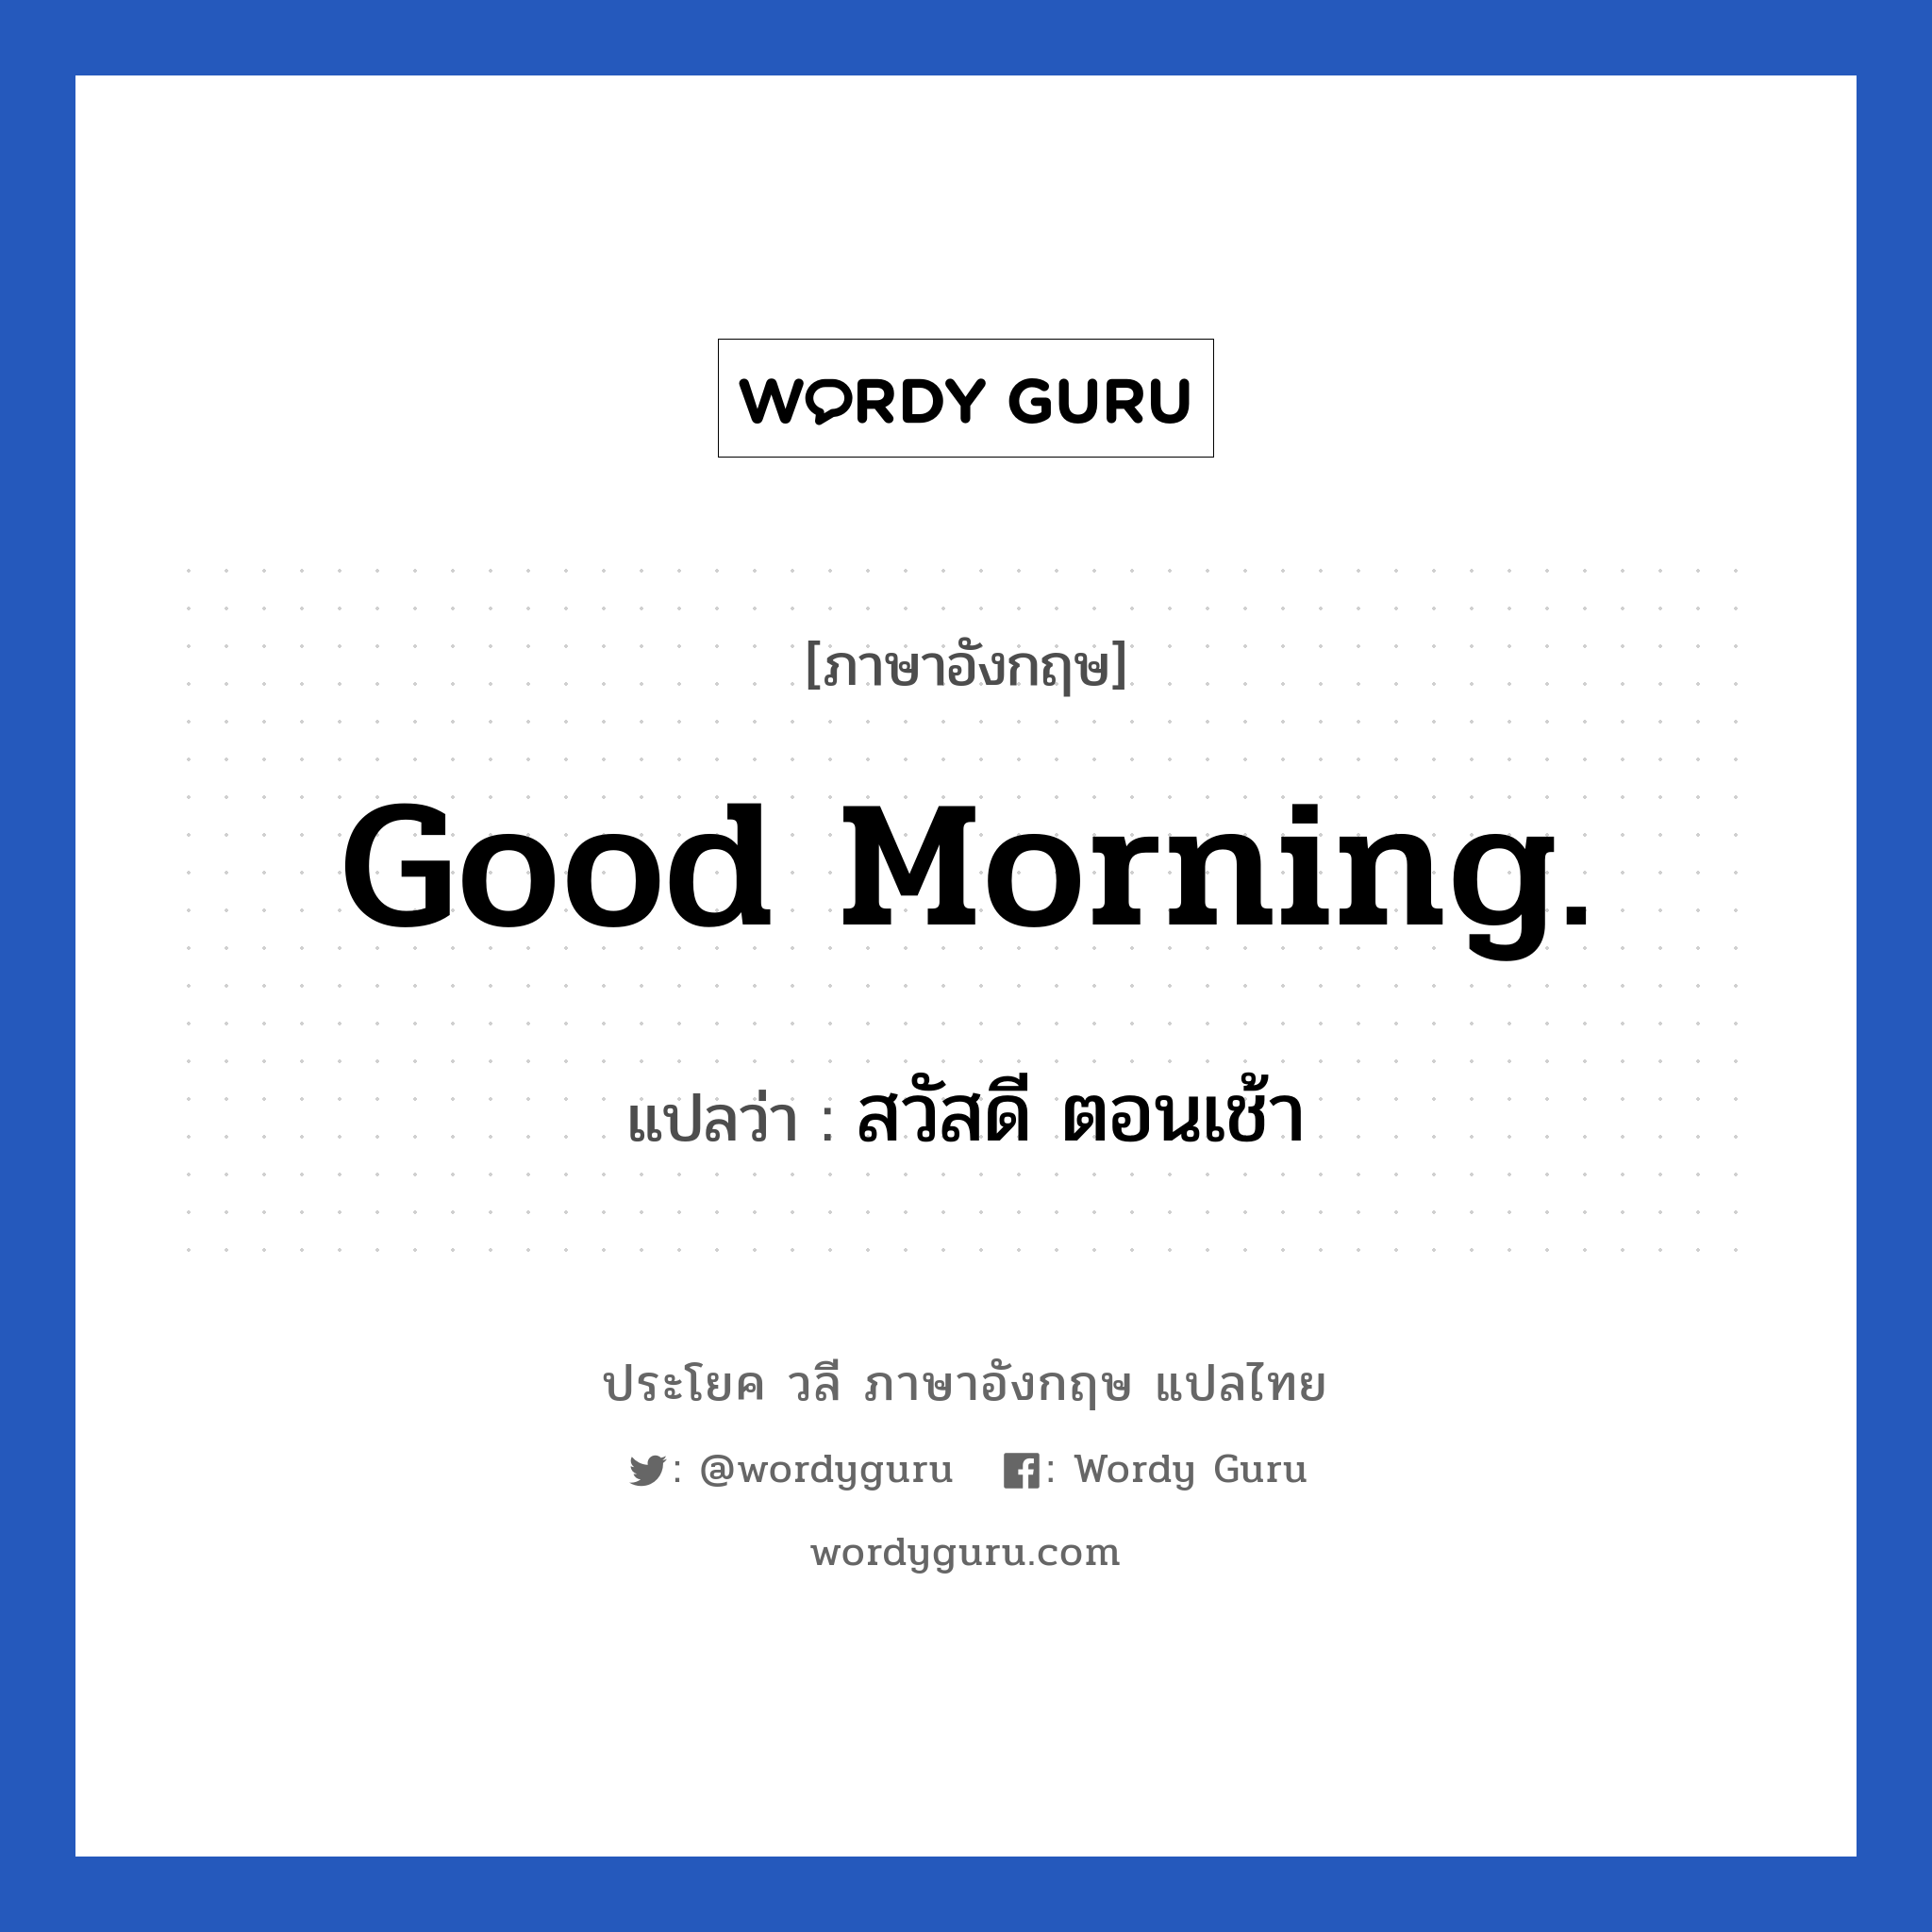 สวัสดี ตอนเช้า ภาษาอังกฤษ?, วลีภาษาอังกฤษ สวัสดี ตอนเช้า แปลว่า Good morning.